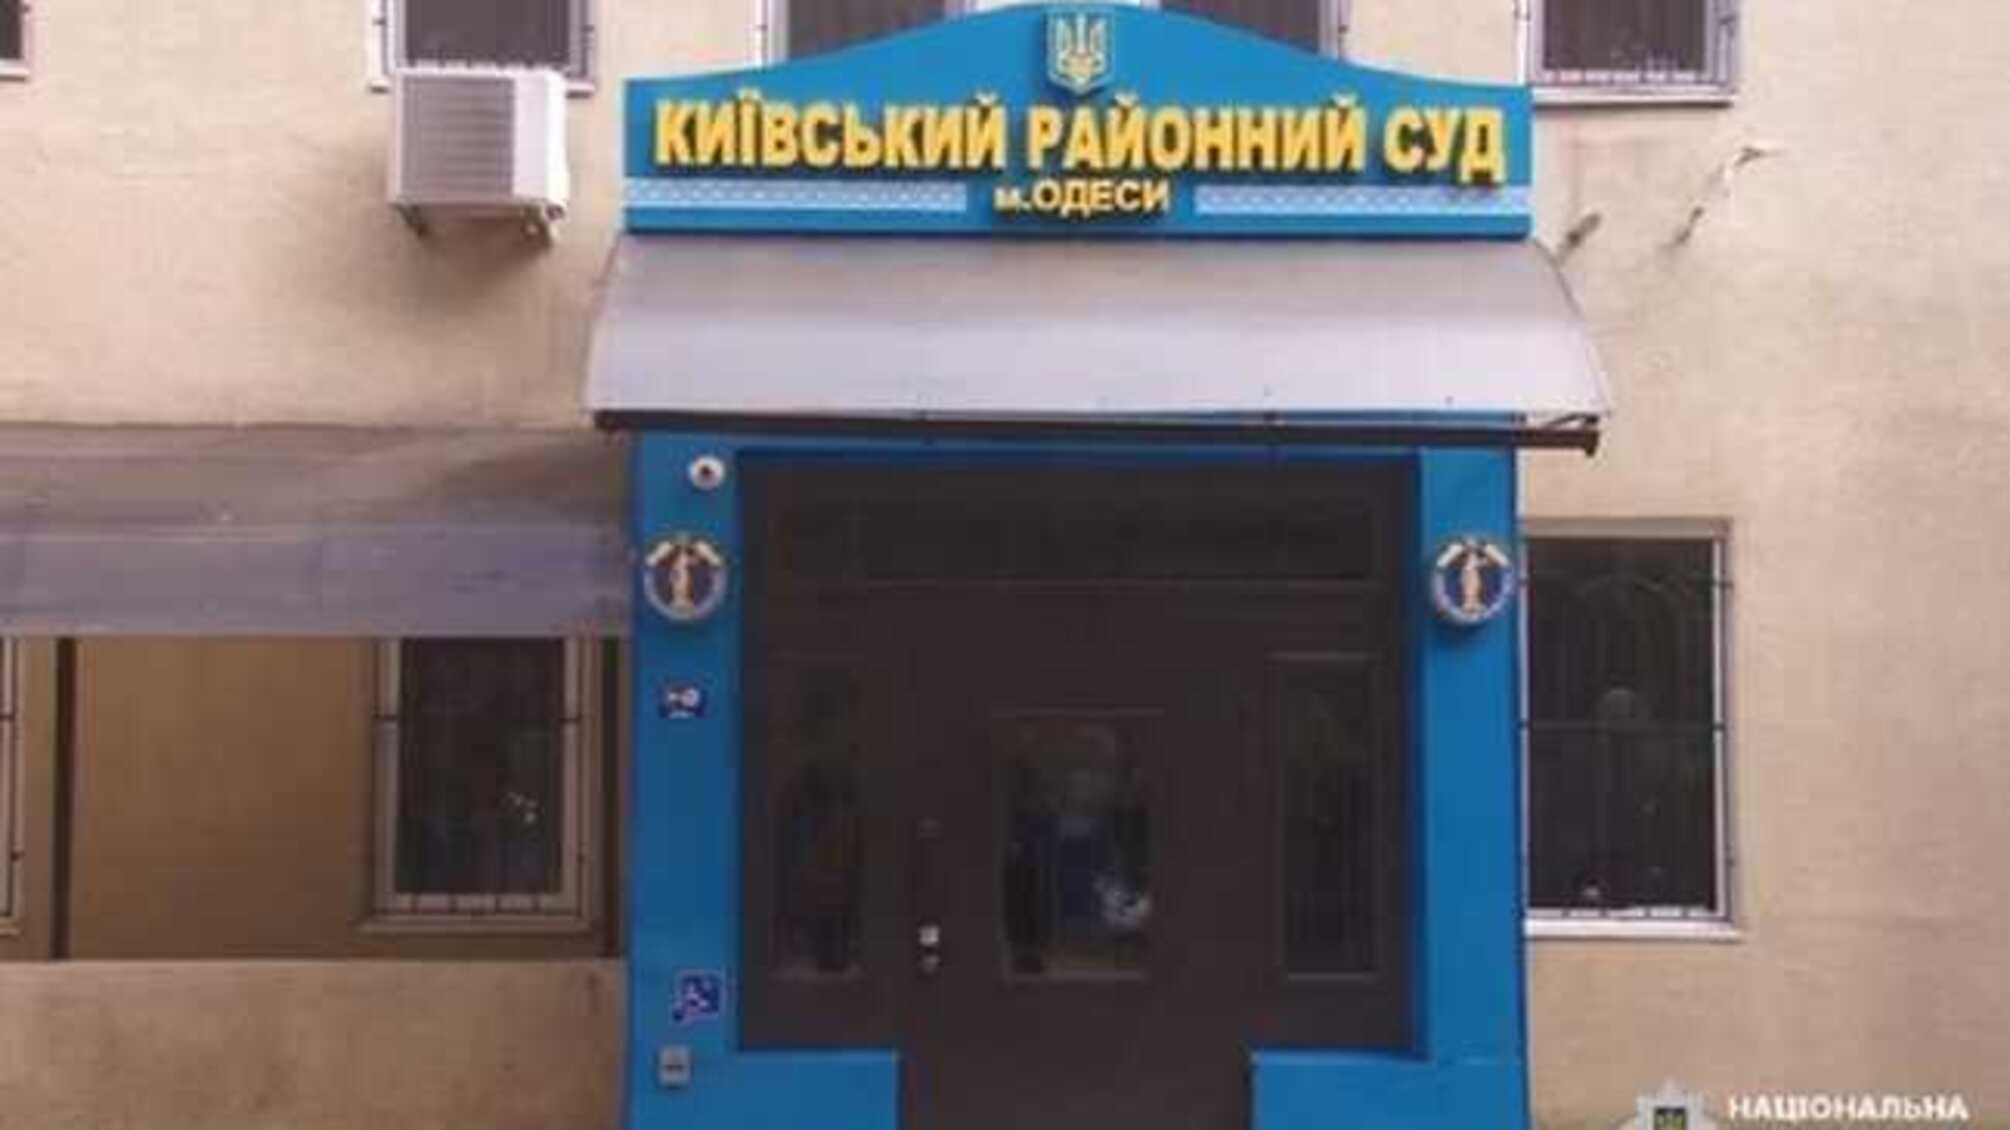 Одесские предприниматели получили условные сроки за похищение своего работника